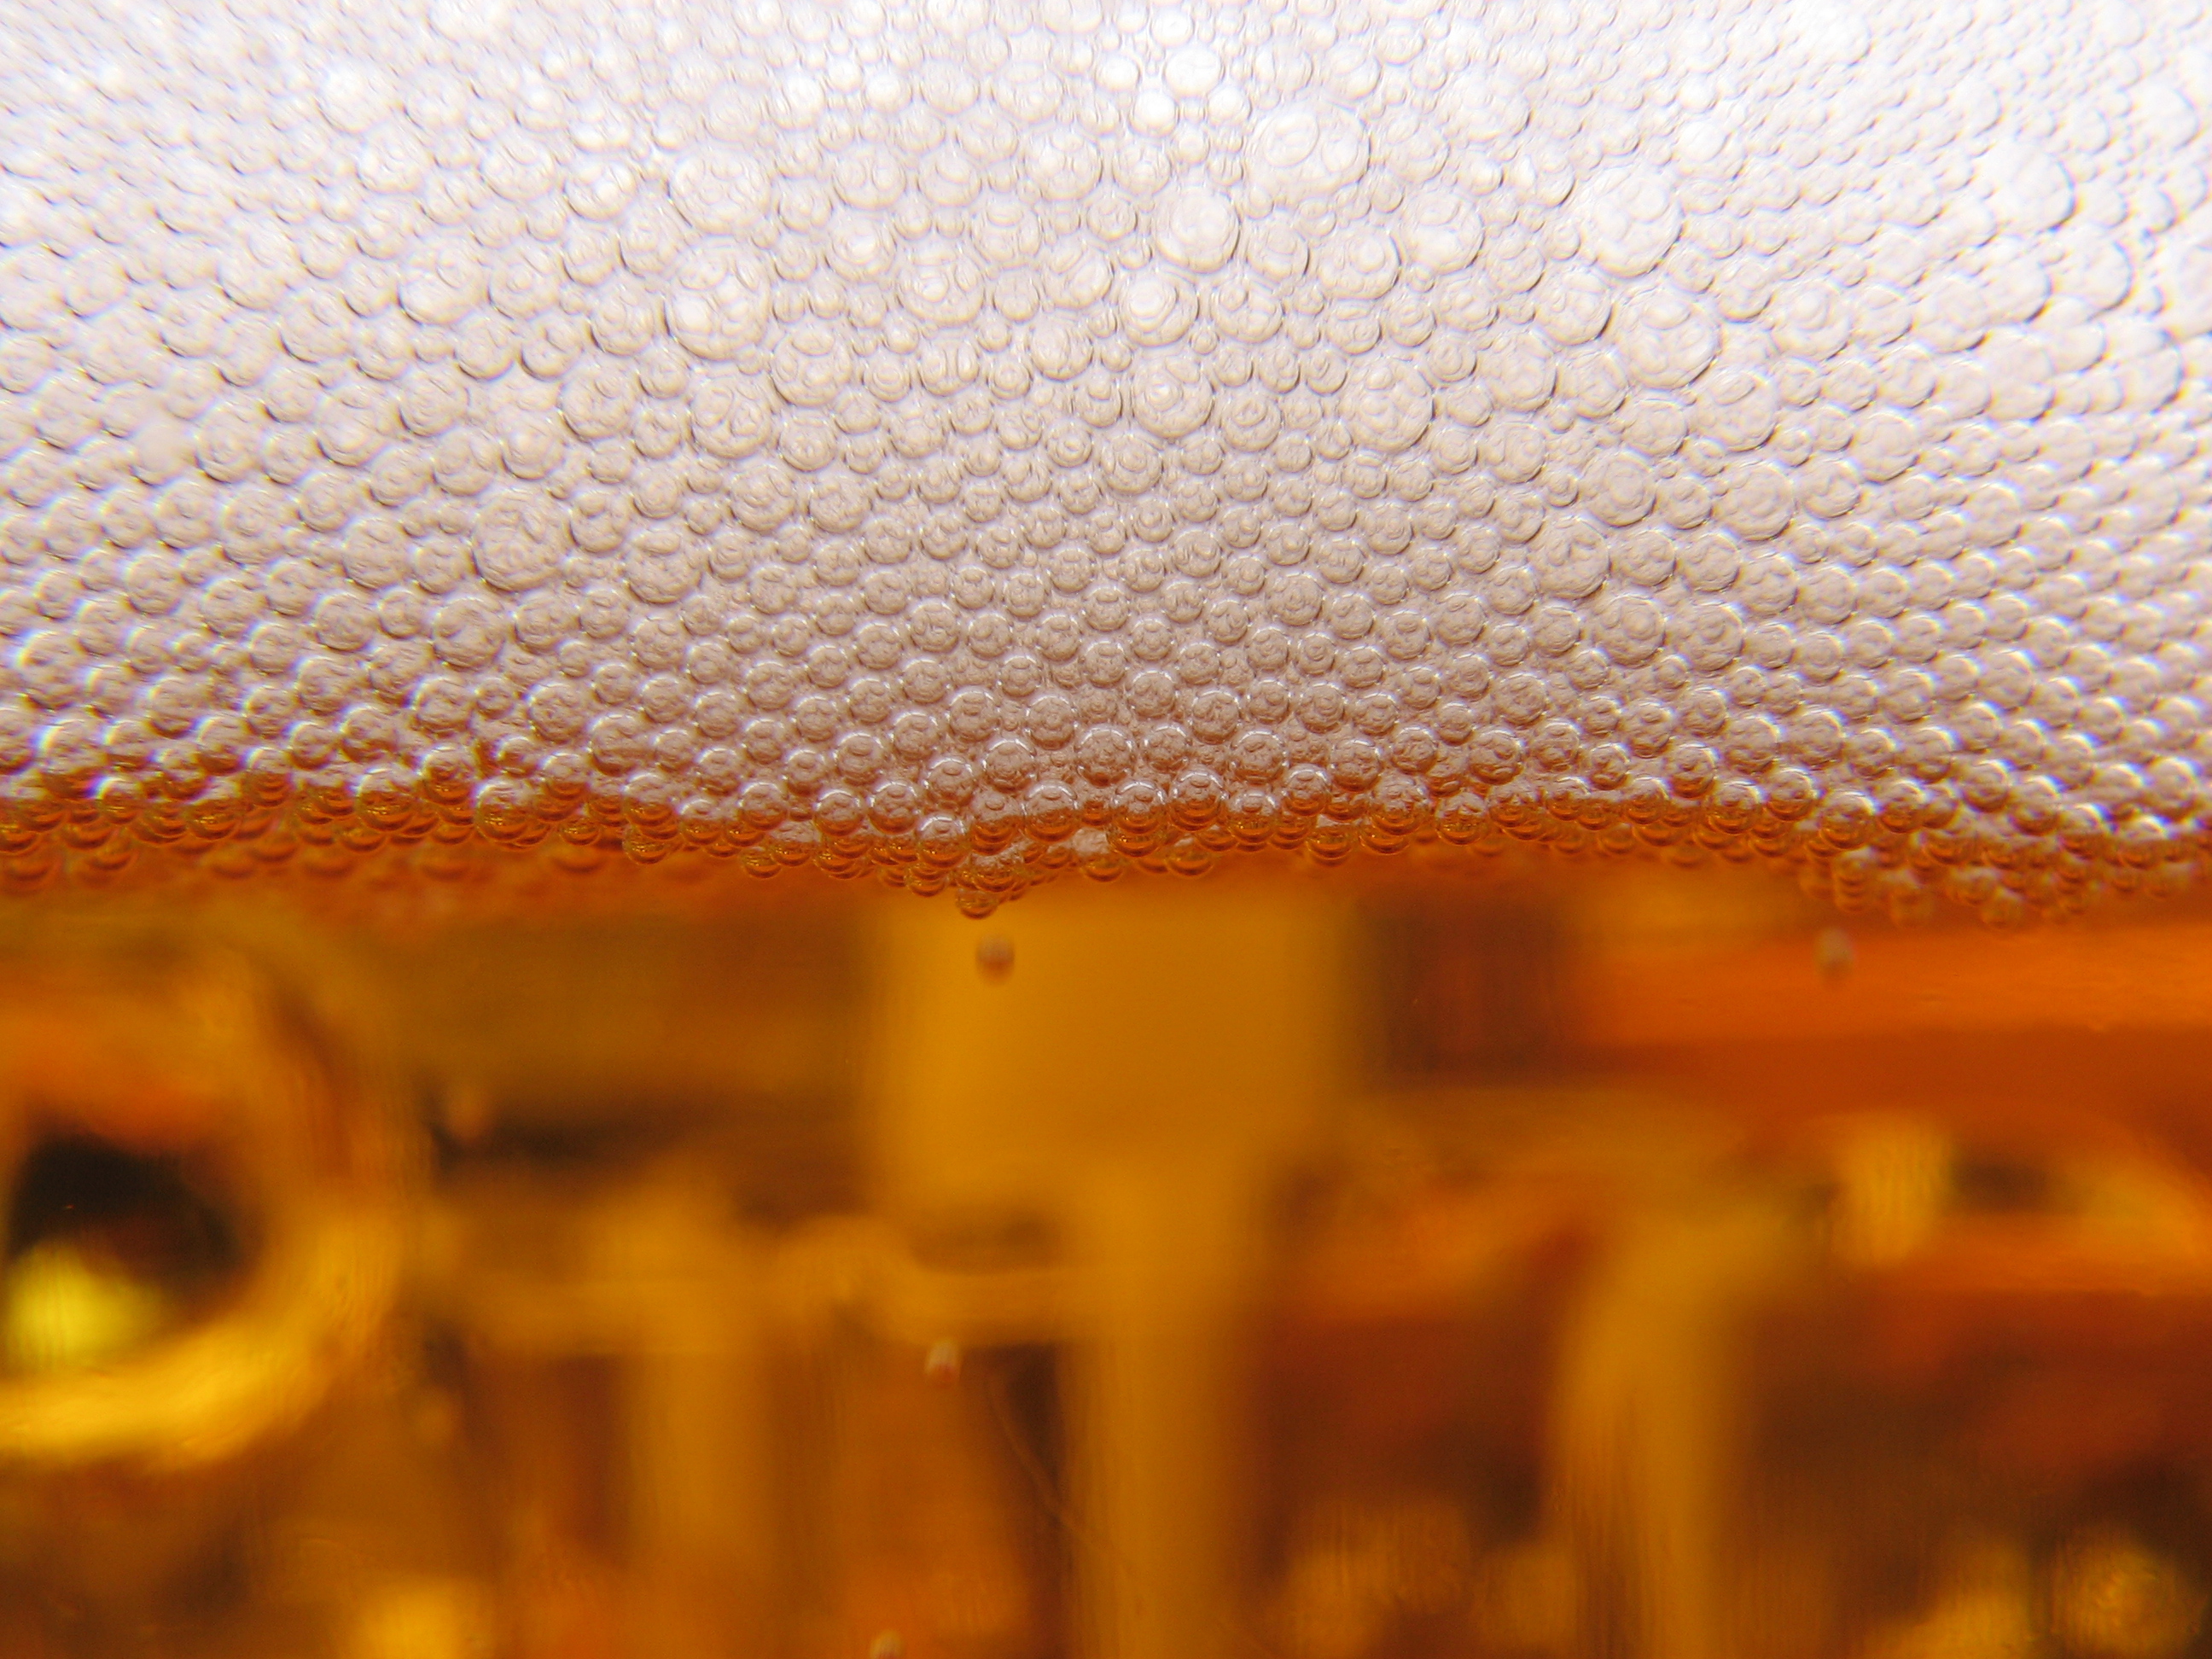 Burbujas de cerveza, la bebida amarga por excelencia. Imagen: mainrc. Fuente: FreeImages.